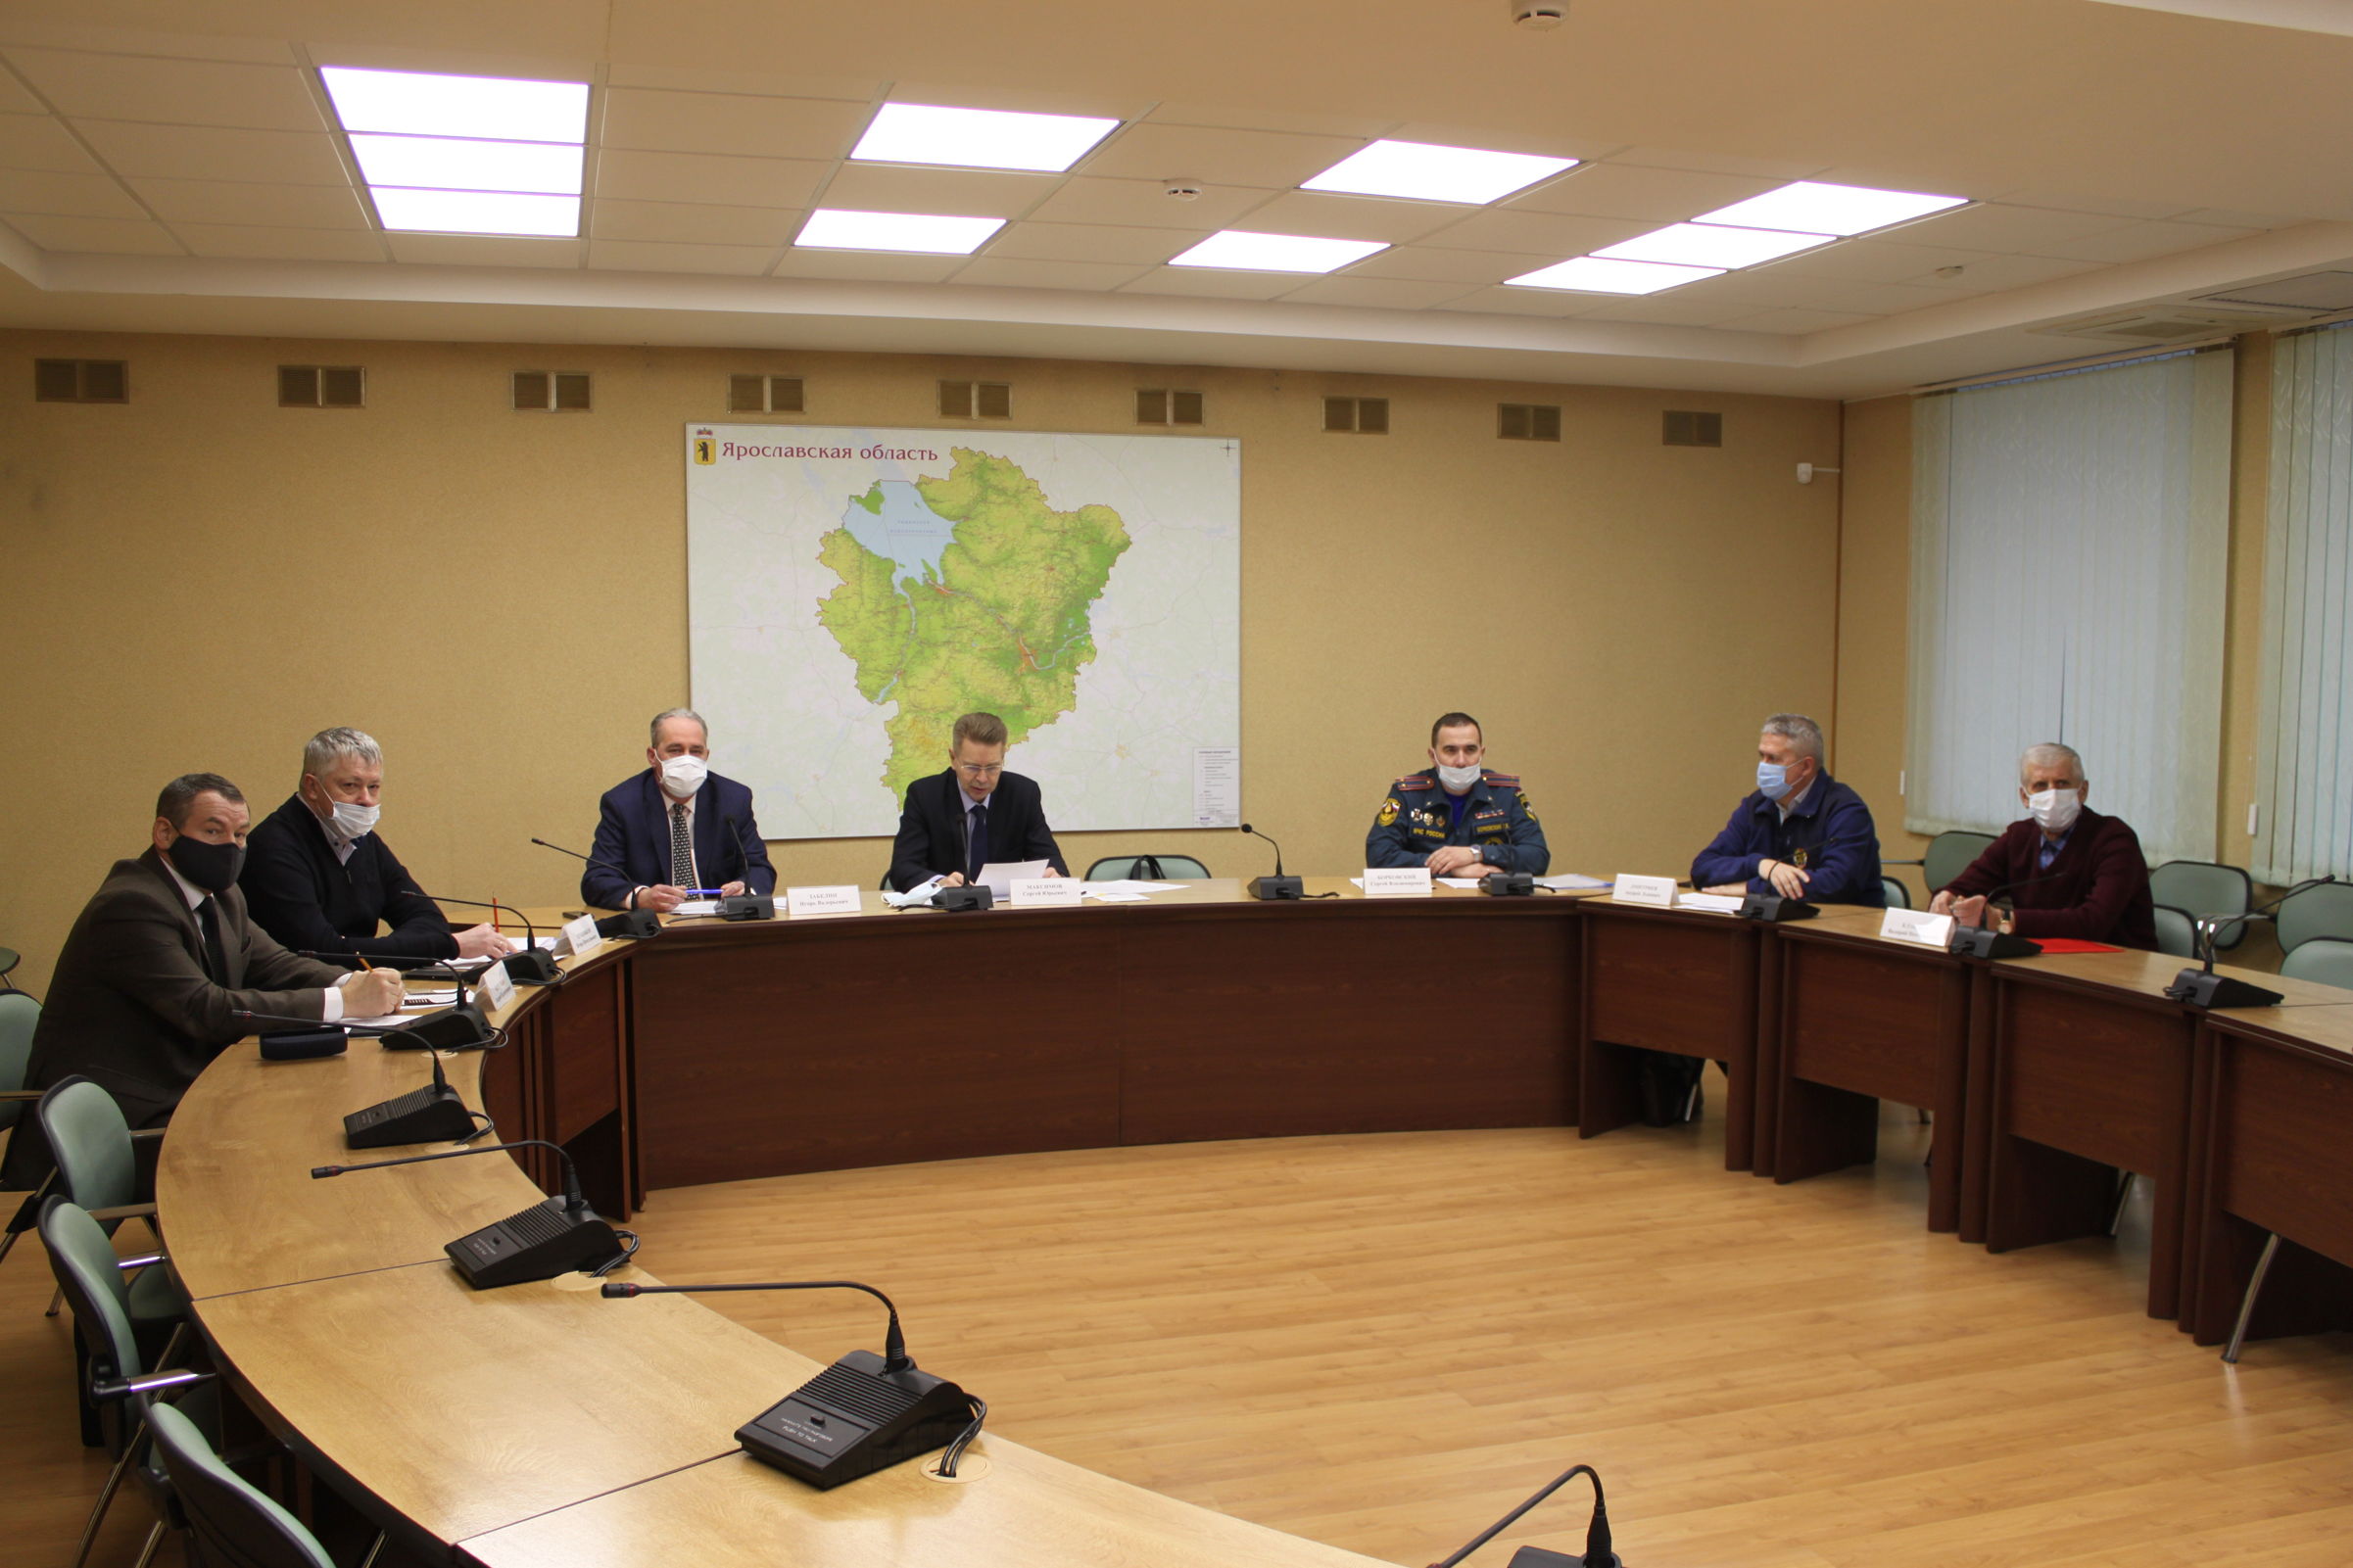 Новые добровольные противопожарные объединения созданы в пяти муниципальных образованиях Ярославской области